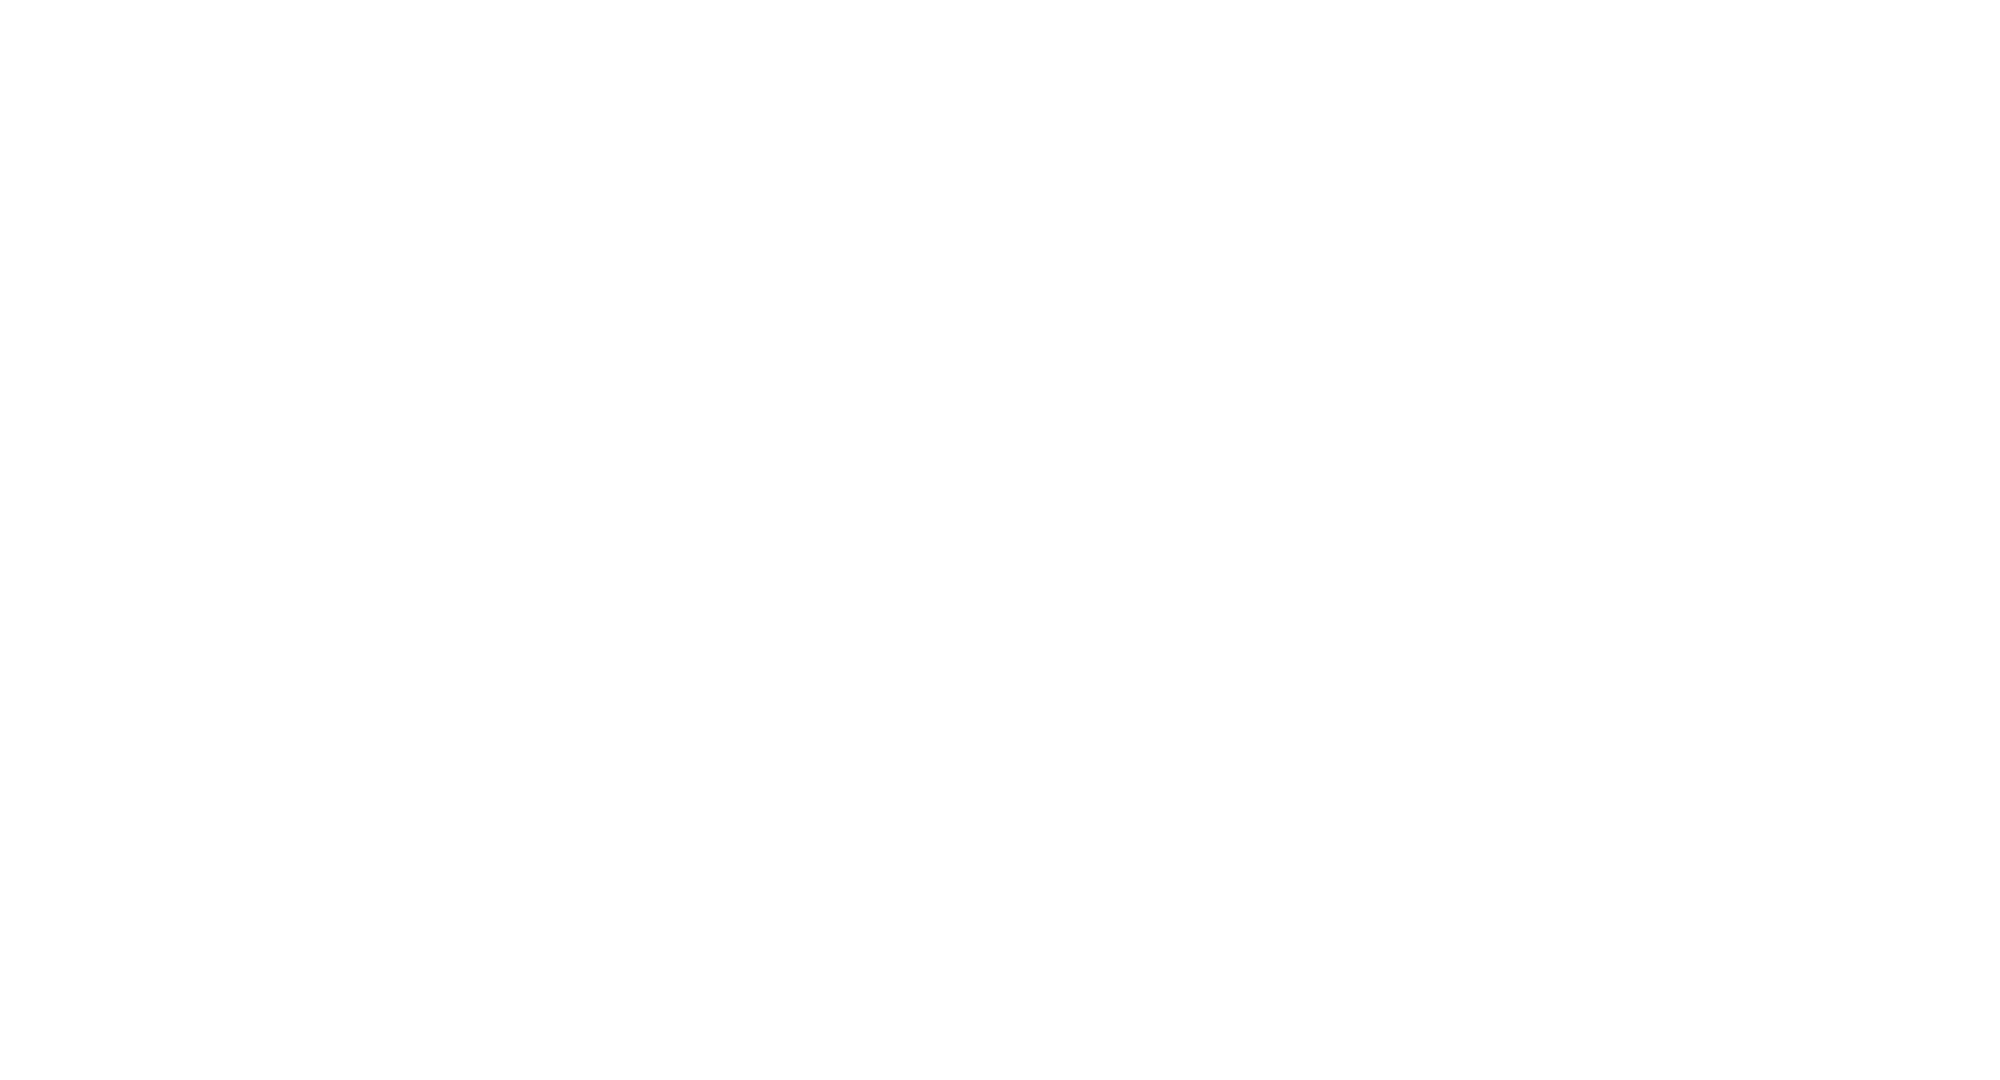 Entdecken Sie unsere Erfolgsgarantie als führende WordPress Agentur mit über 10 Jahren Erfahrung im herausragenden Webdesign.